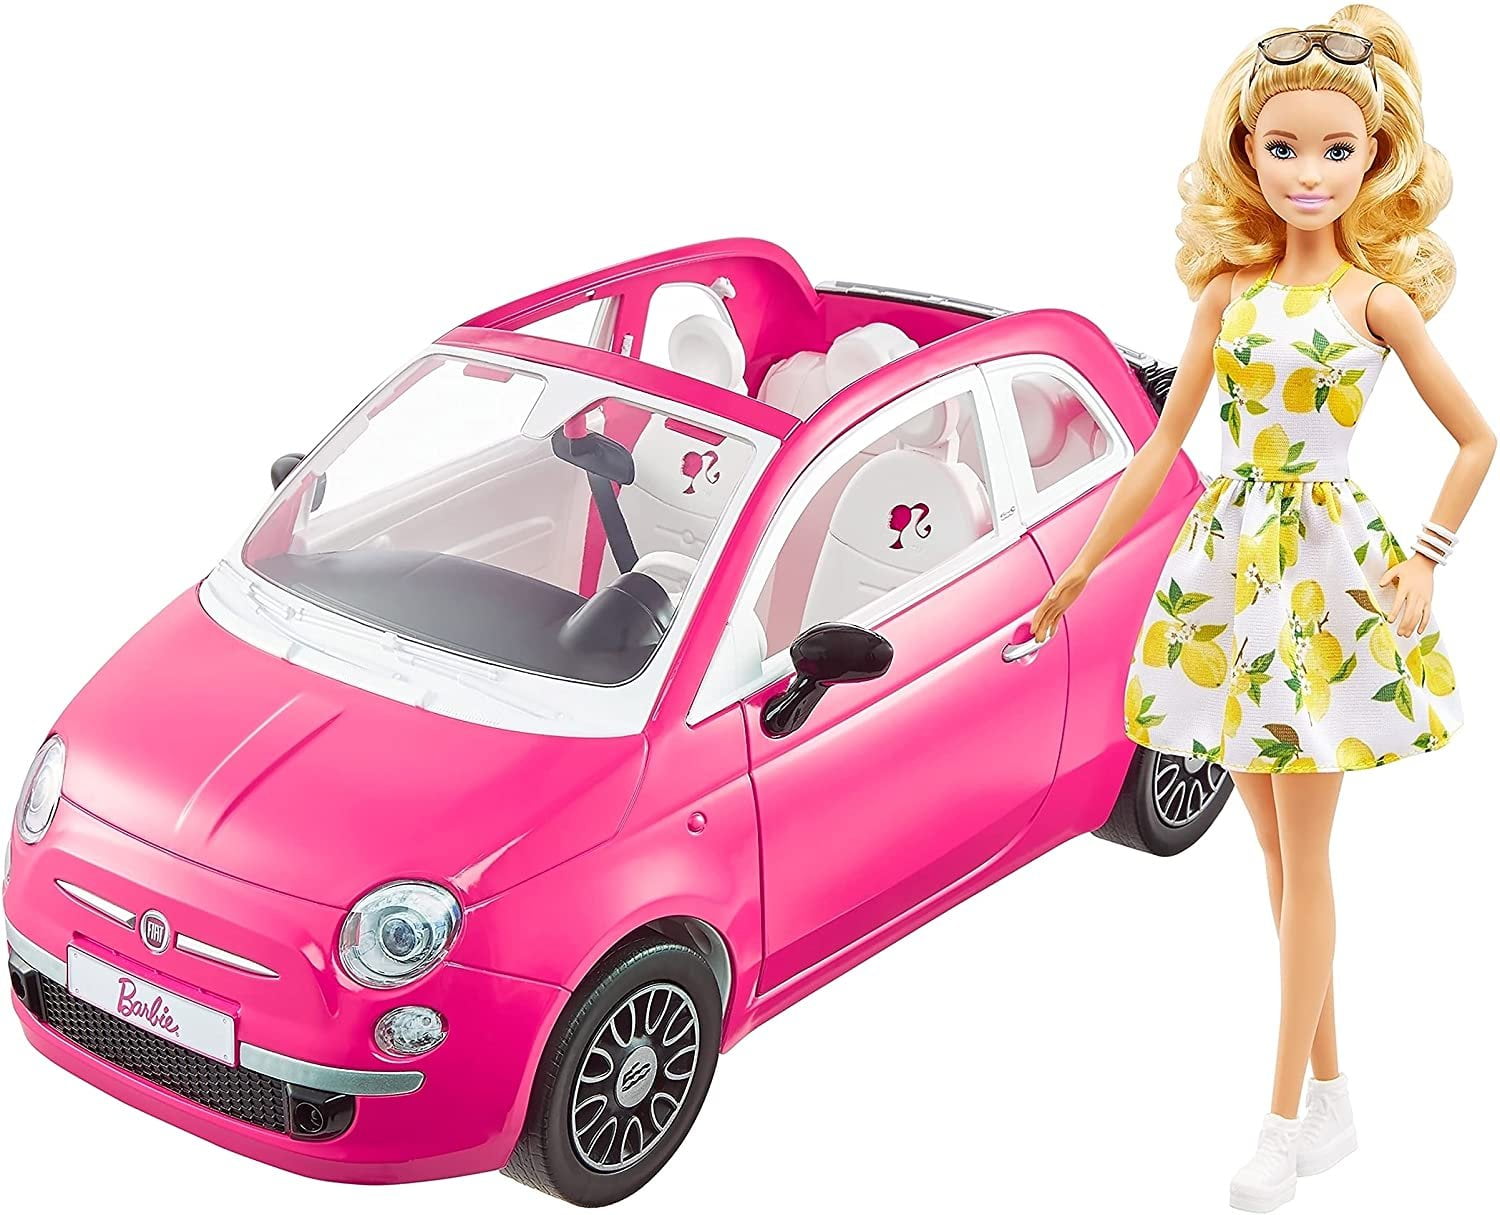 Fiat 500 Barbie Concept (2009) - pictures, information & specs